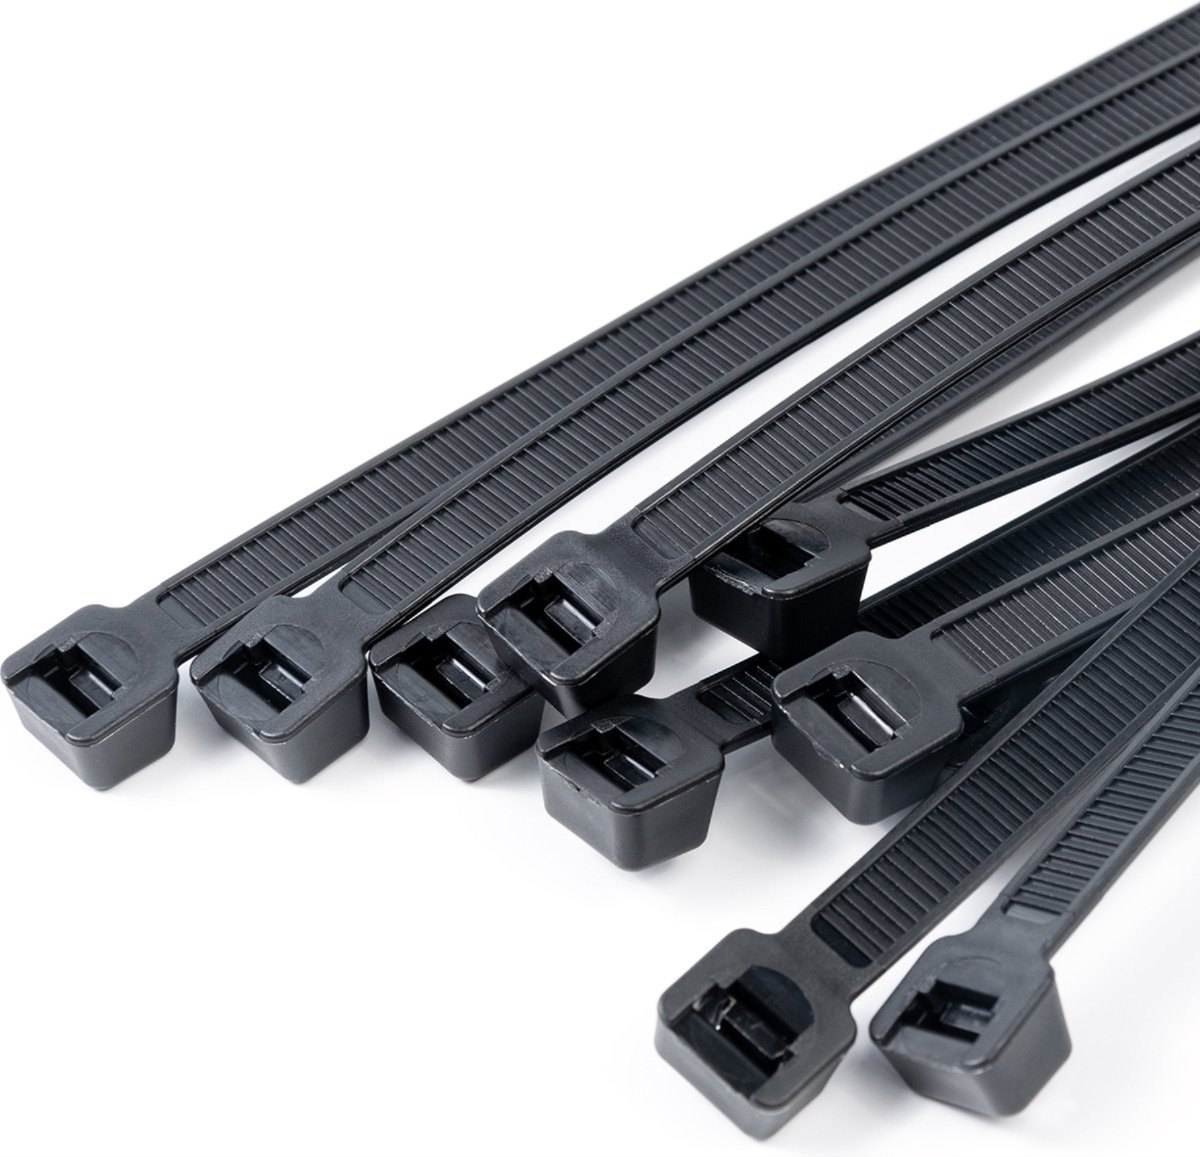 CHPN - Tiewraps - 200 stuks - Tie Ribs - 100MM lang - Zwart - Tie wraps - Universeel - Klussen - Bevestigen - Handige sluiters